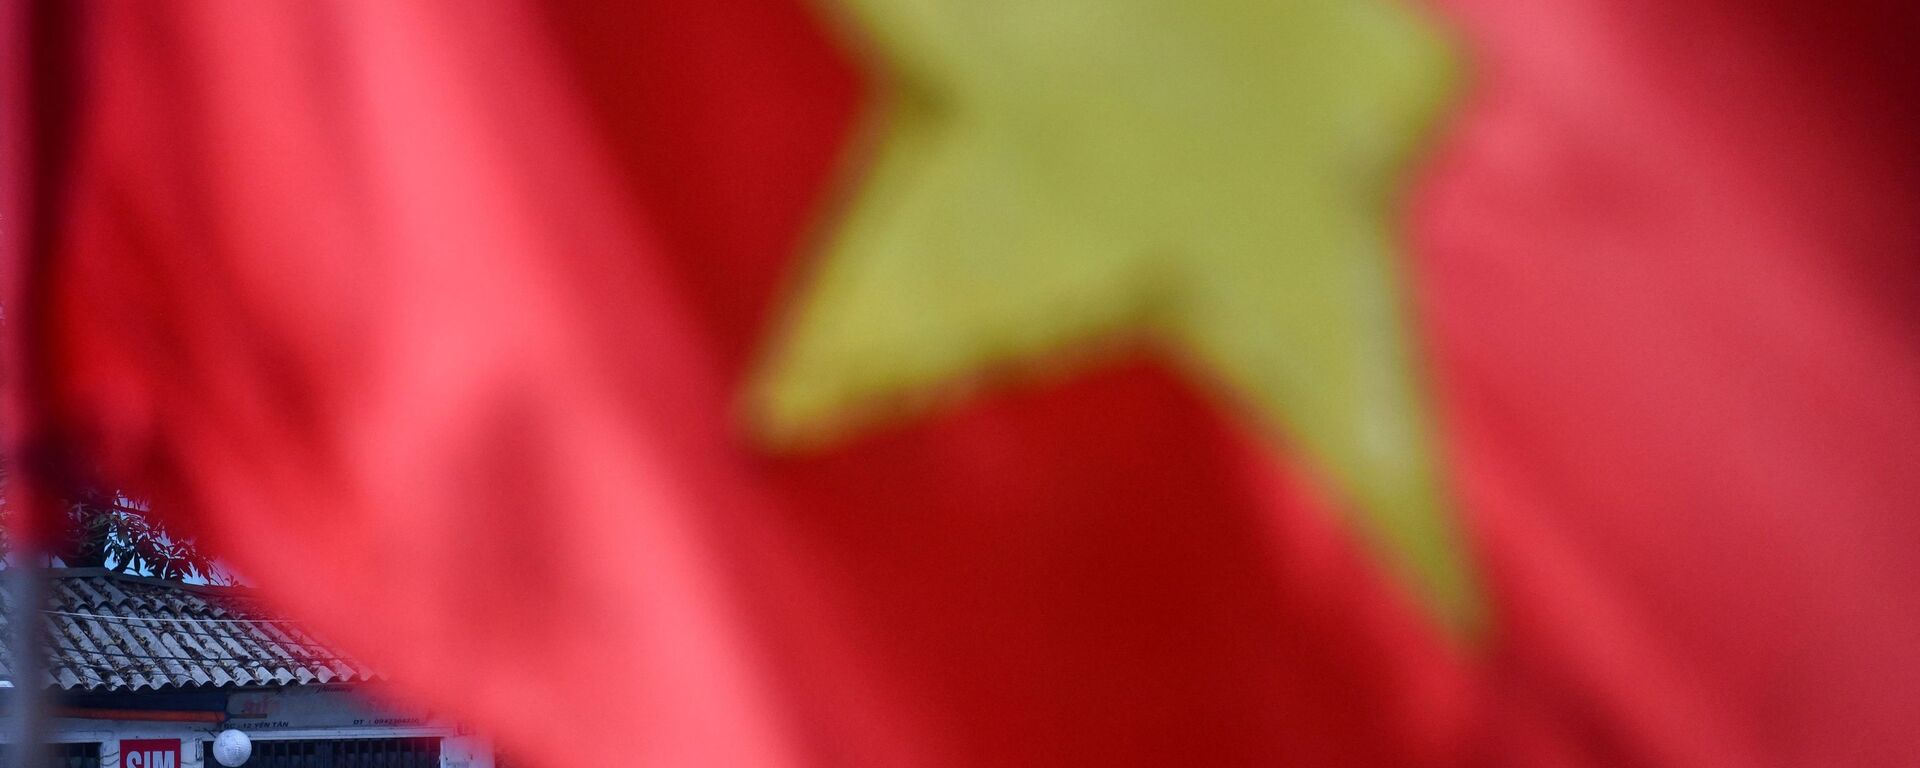 Cột cờ Việt Nam, Hà Nội. - Sputnik Việt Nam, 1920, 30.09.2021